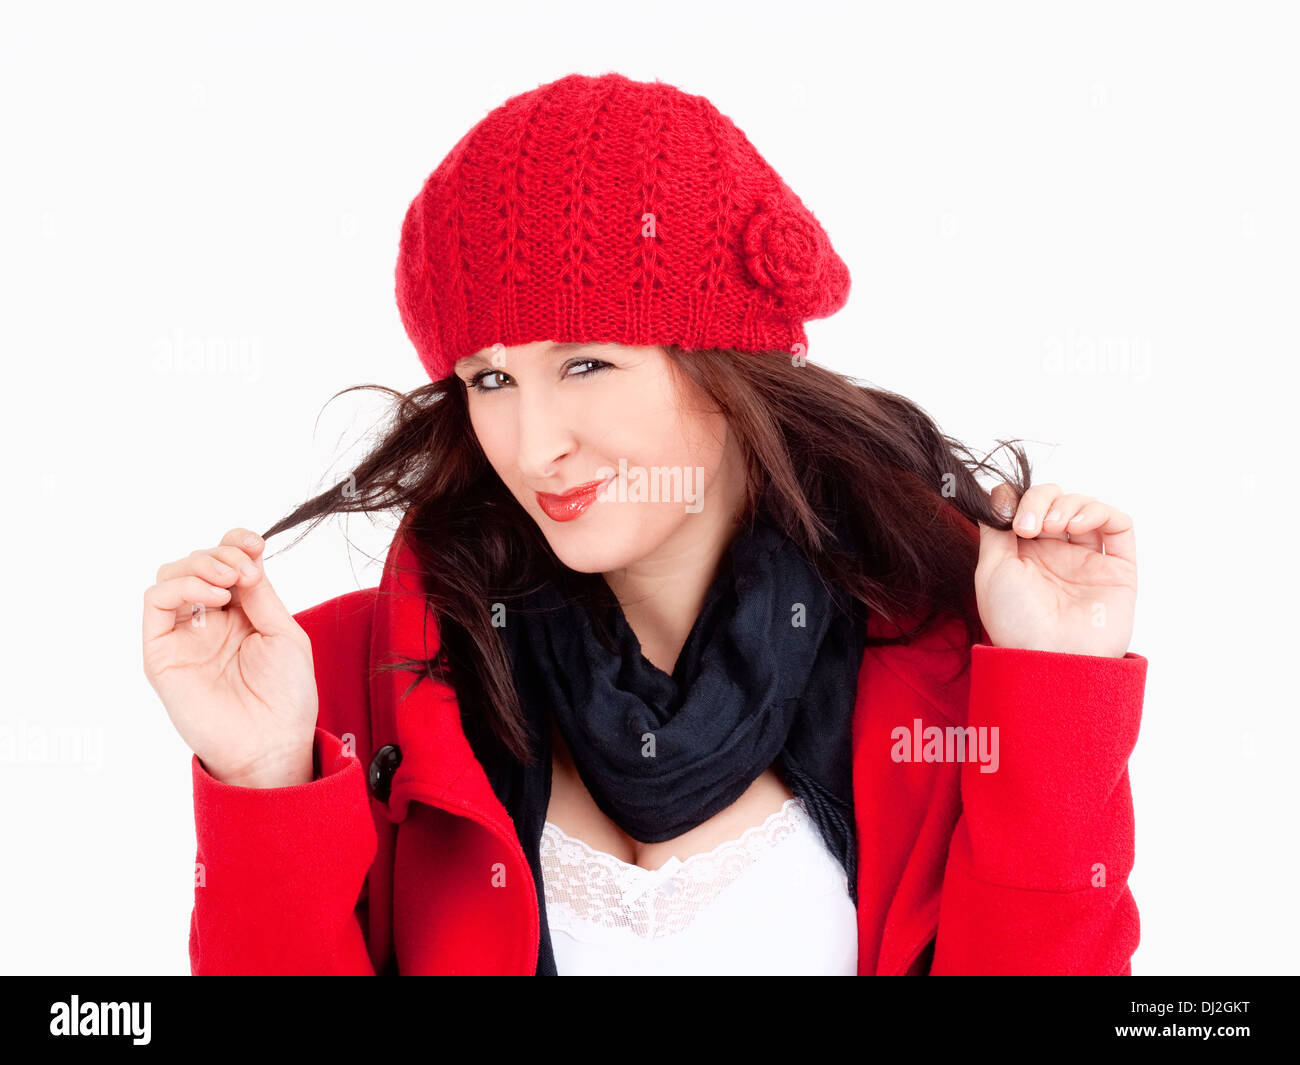 Junge Frau im roten Mantel und Kappe lächelnd - Isolated on White Stockfoto